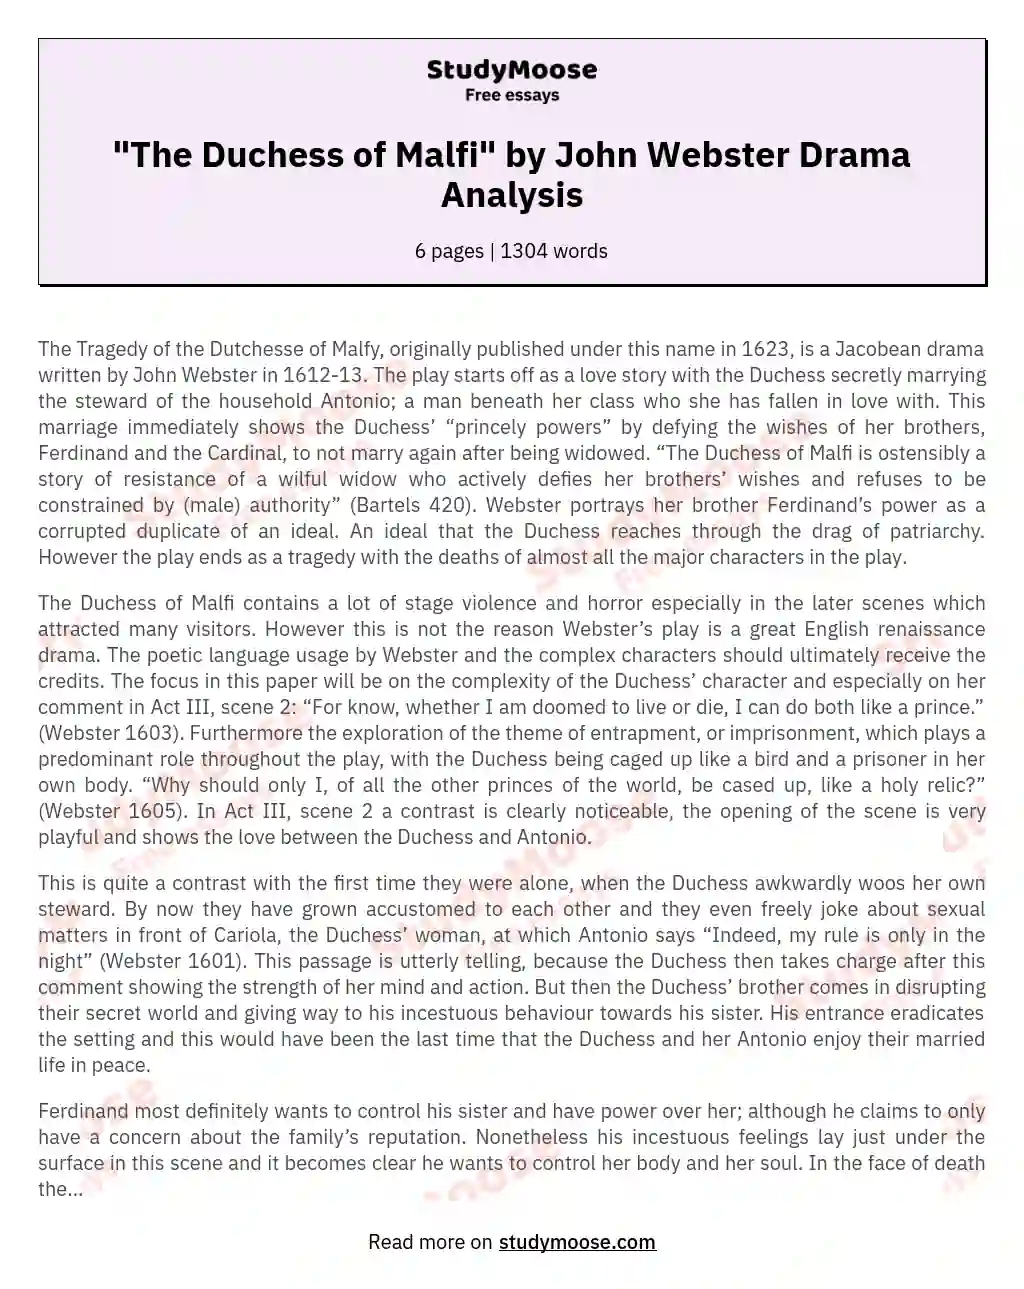 "The Duchess of Malfi" by John Webster Drama Analysis